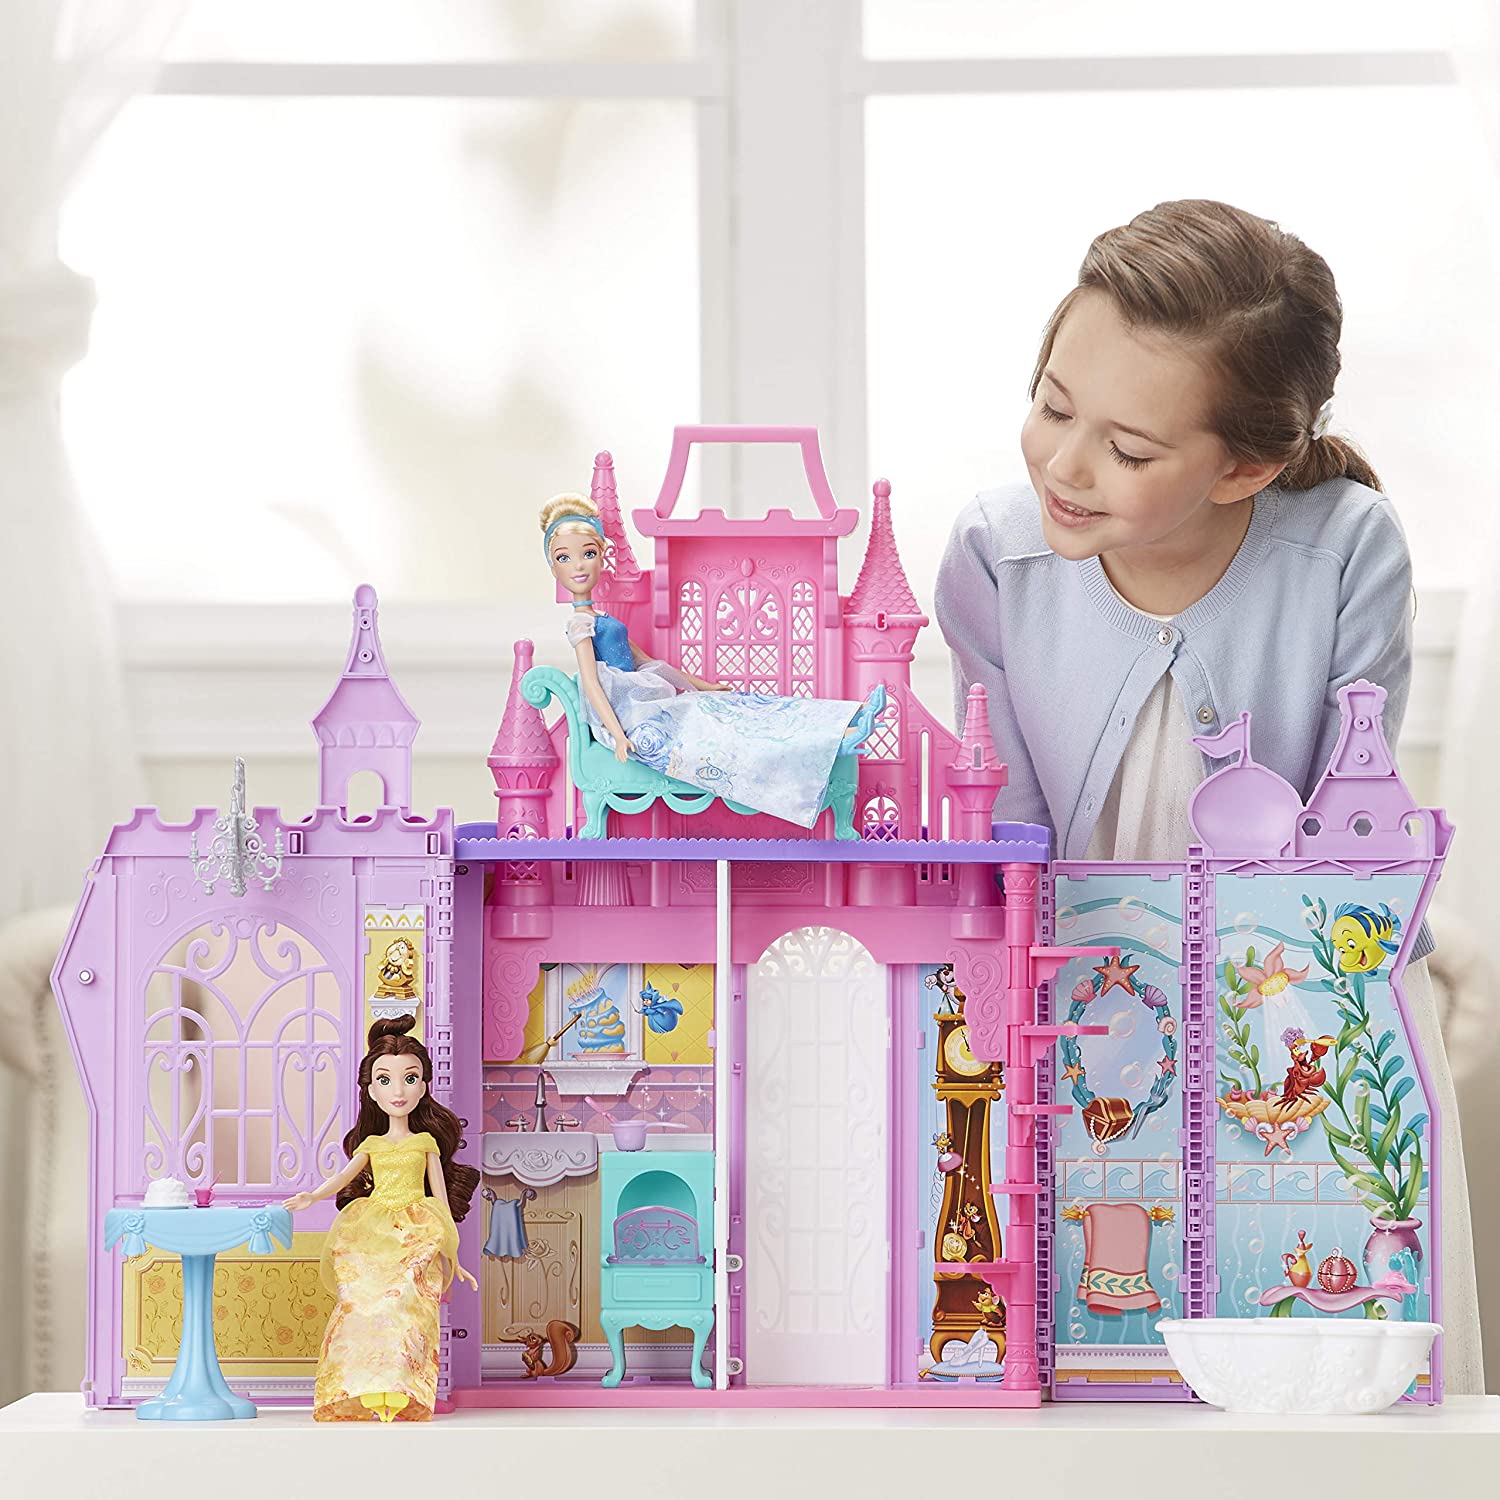 Castello delle Principesse Disney – The Toys Store